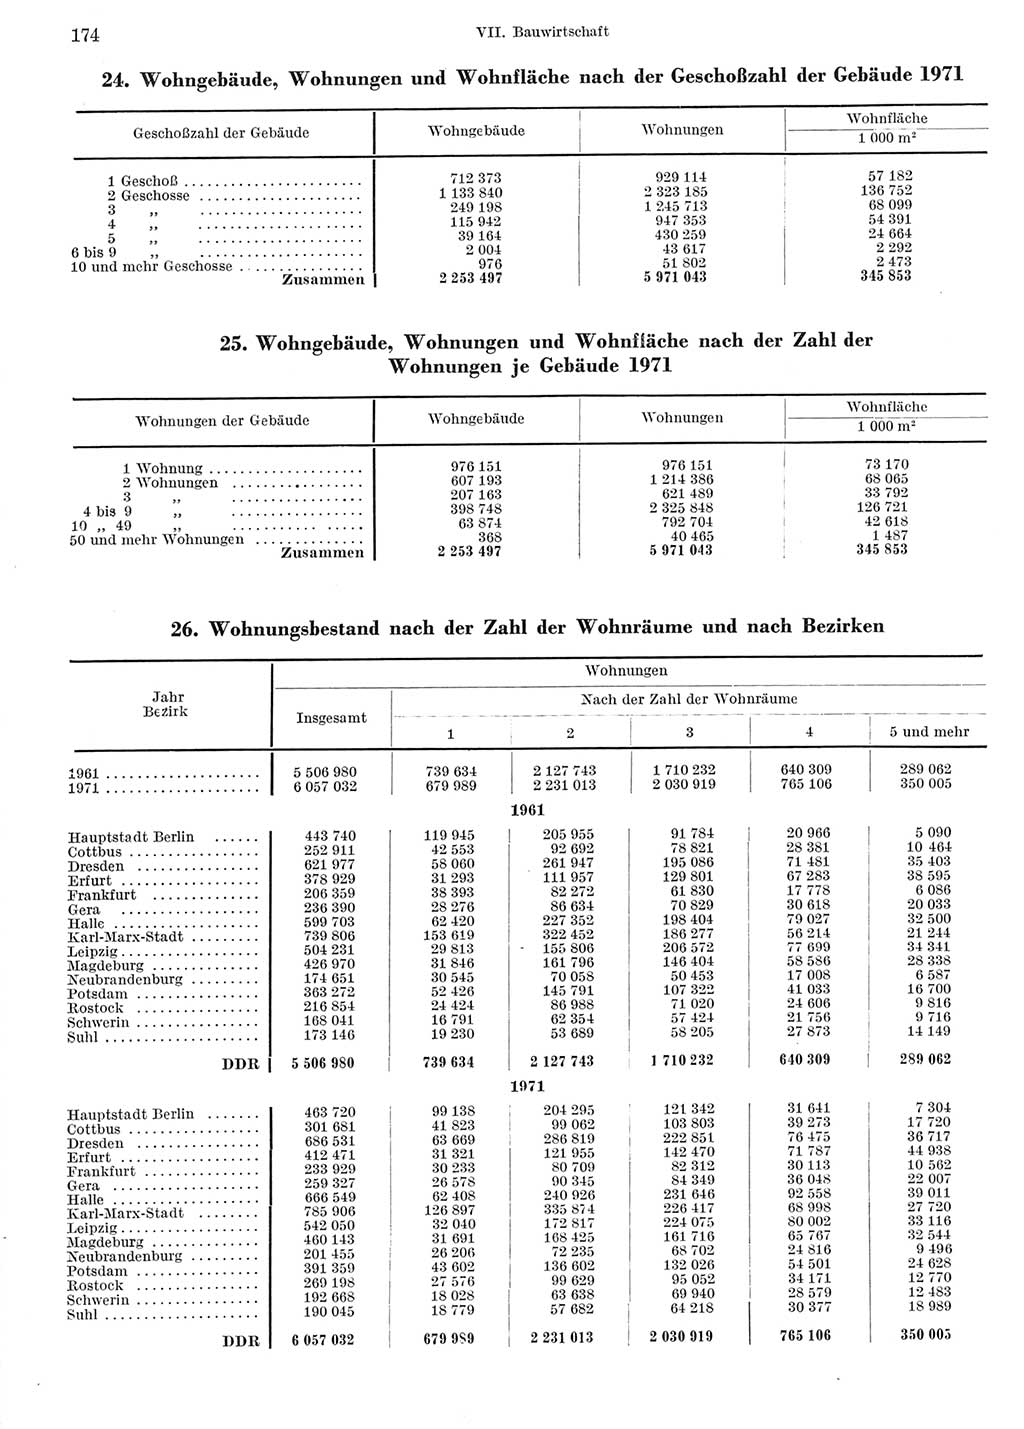 Statistisches Jahrbuch der Deutschen Demokratischen Republik (DDR) 1972, Seite 174 (Stat. Jb. DDR 1972, S. 174)